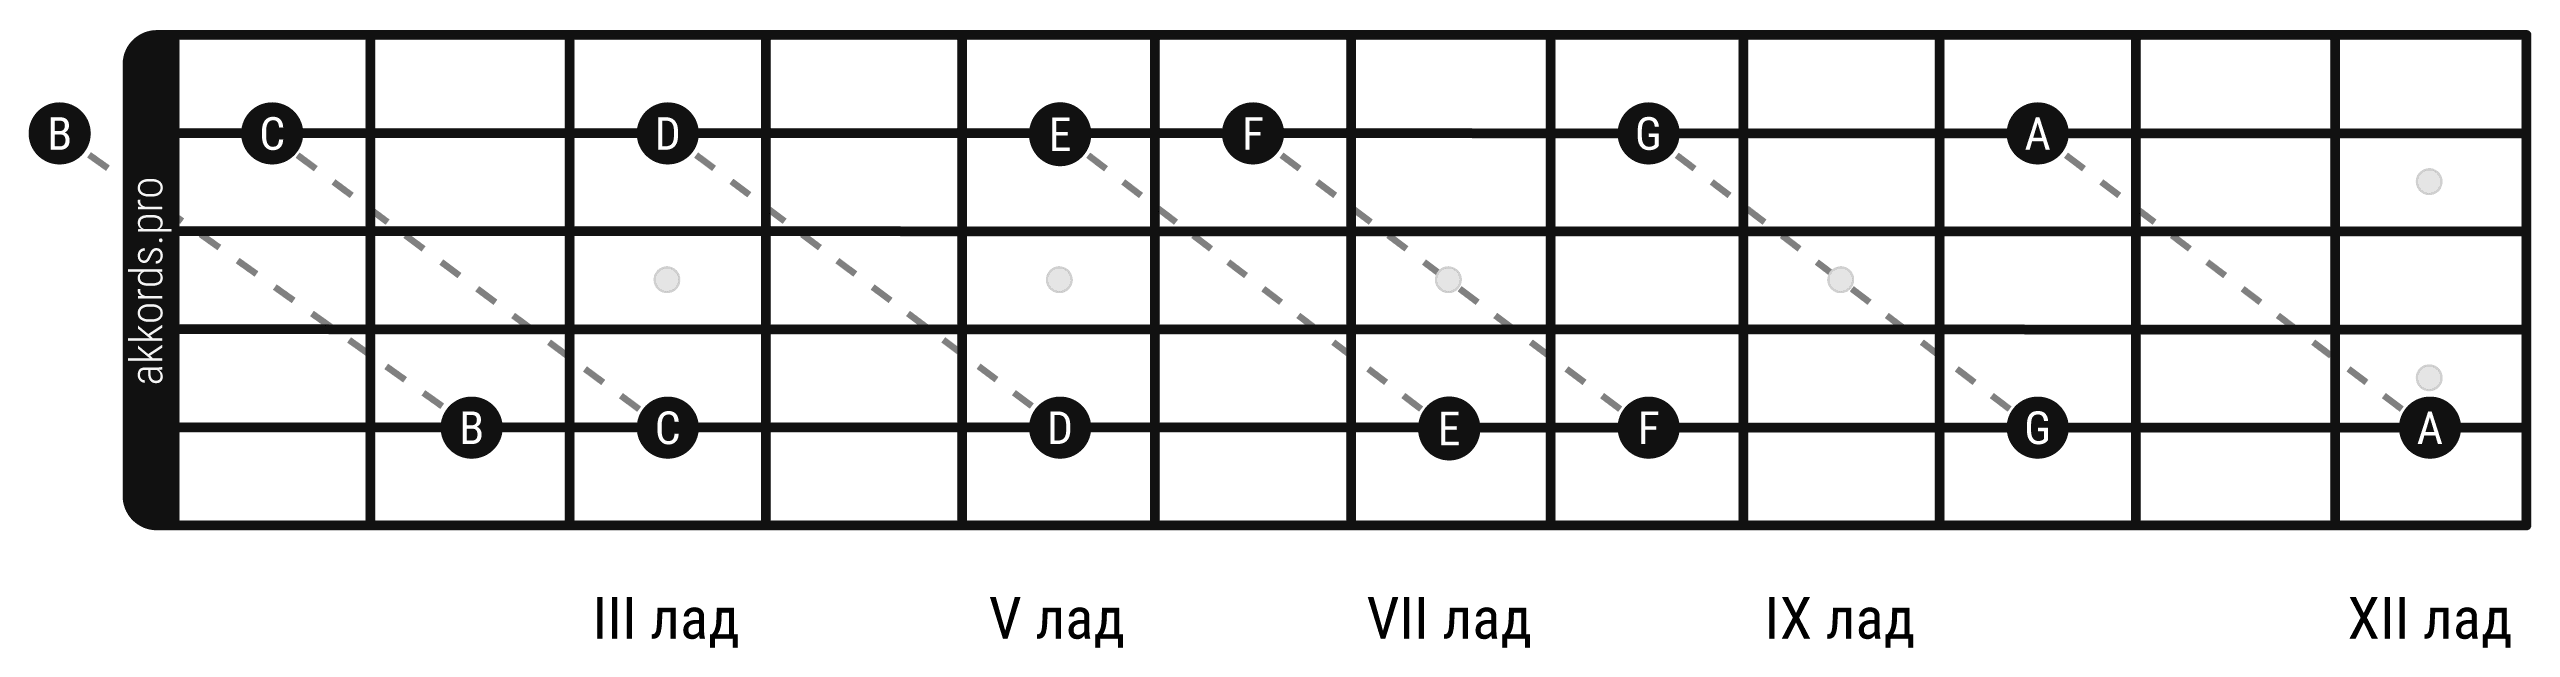 Ноты на грифе гитары: поиск нот по октавным формам от 2 струны